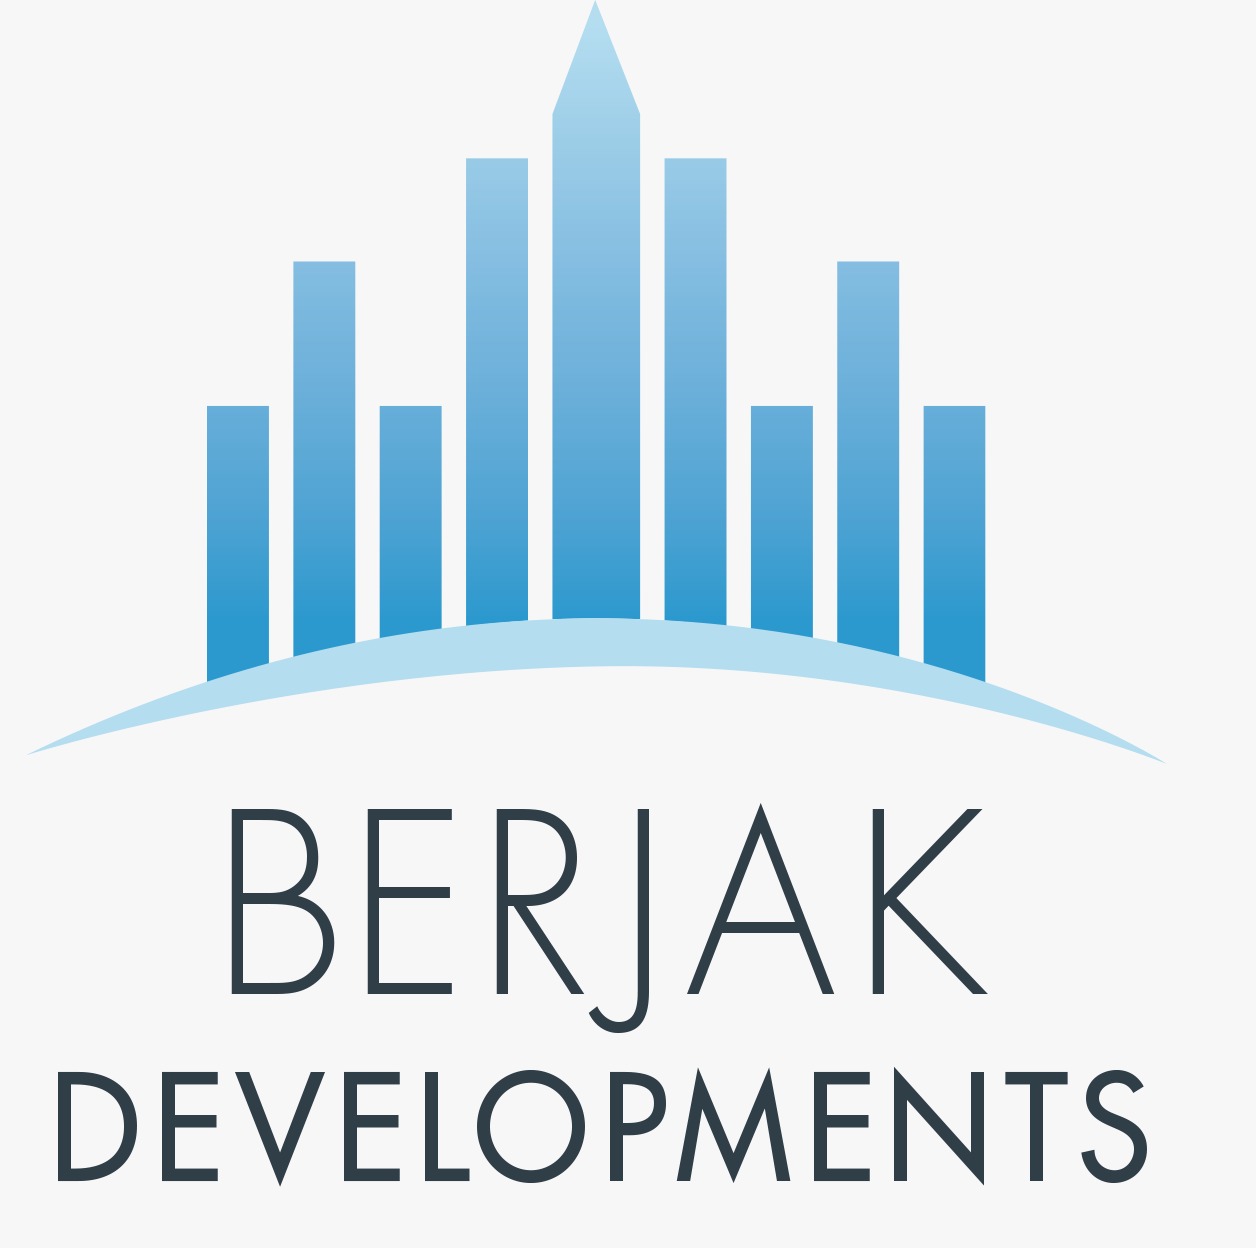 Berjak Properties Developments Inc